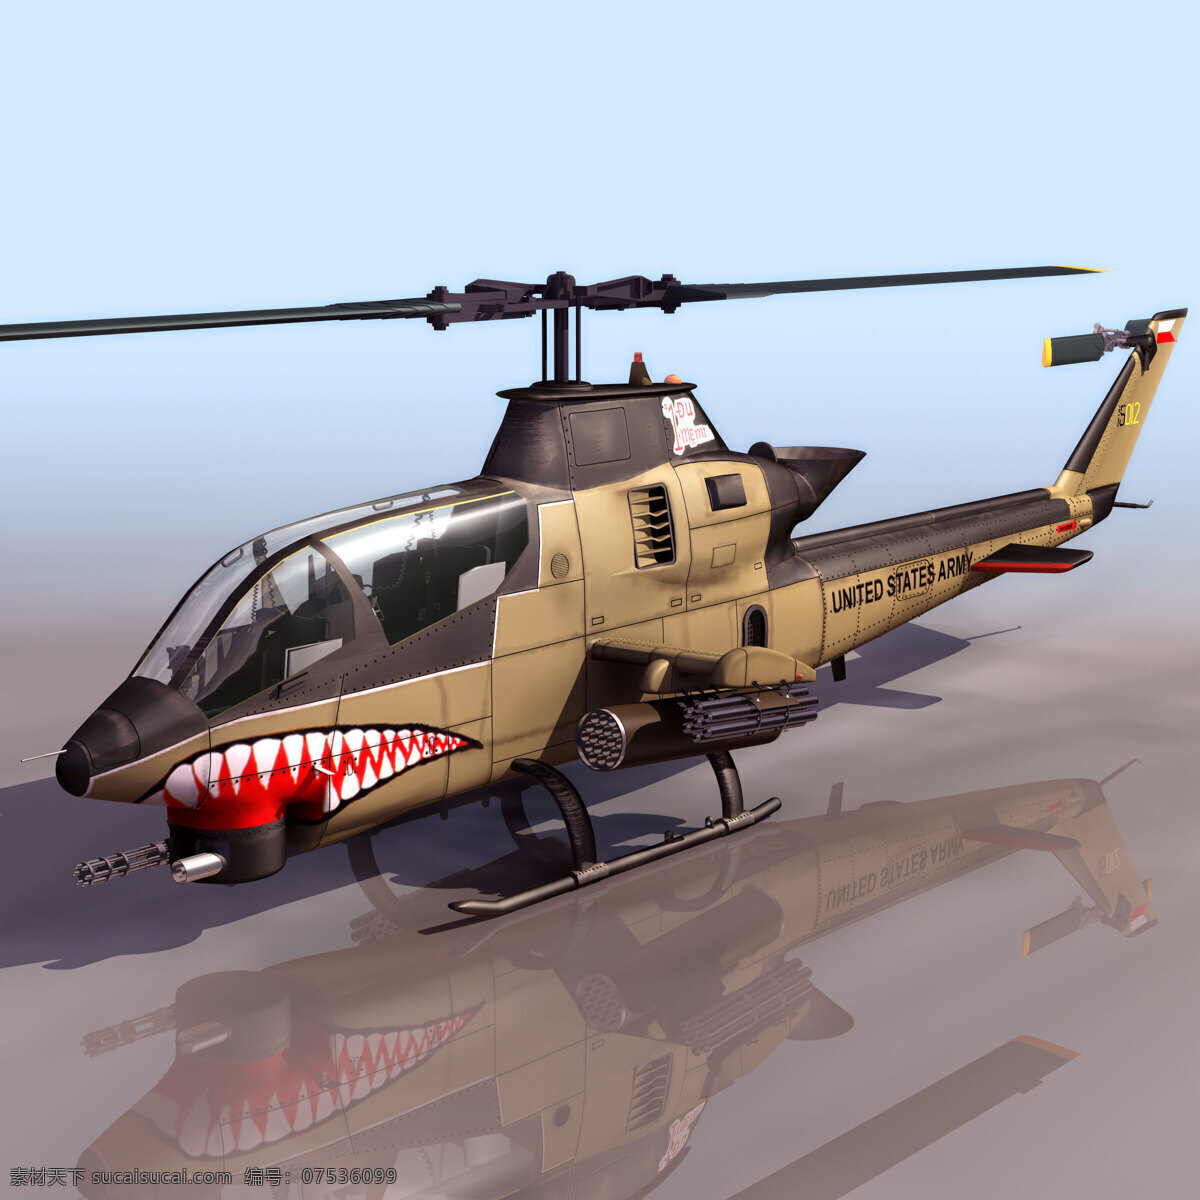 鲨鱼 战斗 直升机 模型 3d 3d设计 3d素材 飞机 交通 交通工具 现代 现代科技 效果图 效果图矢量 导弹 现代科技矢量 3d模型素材 其他3d模型